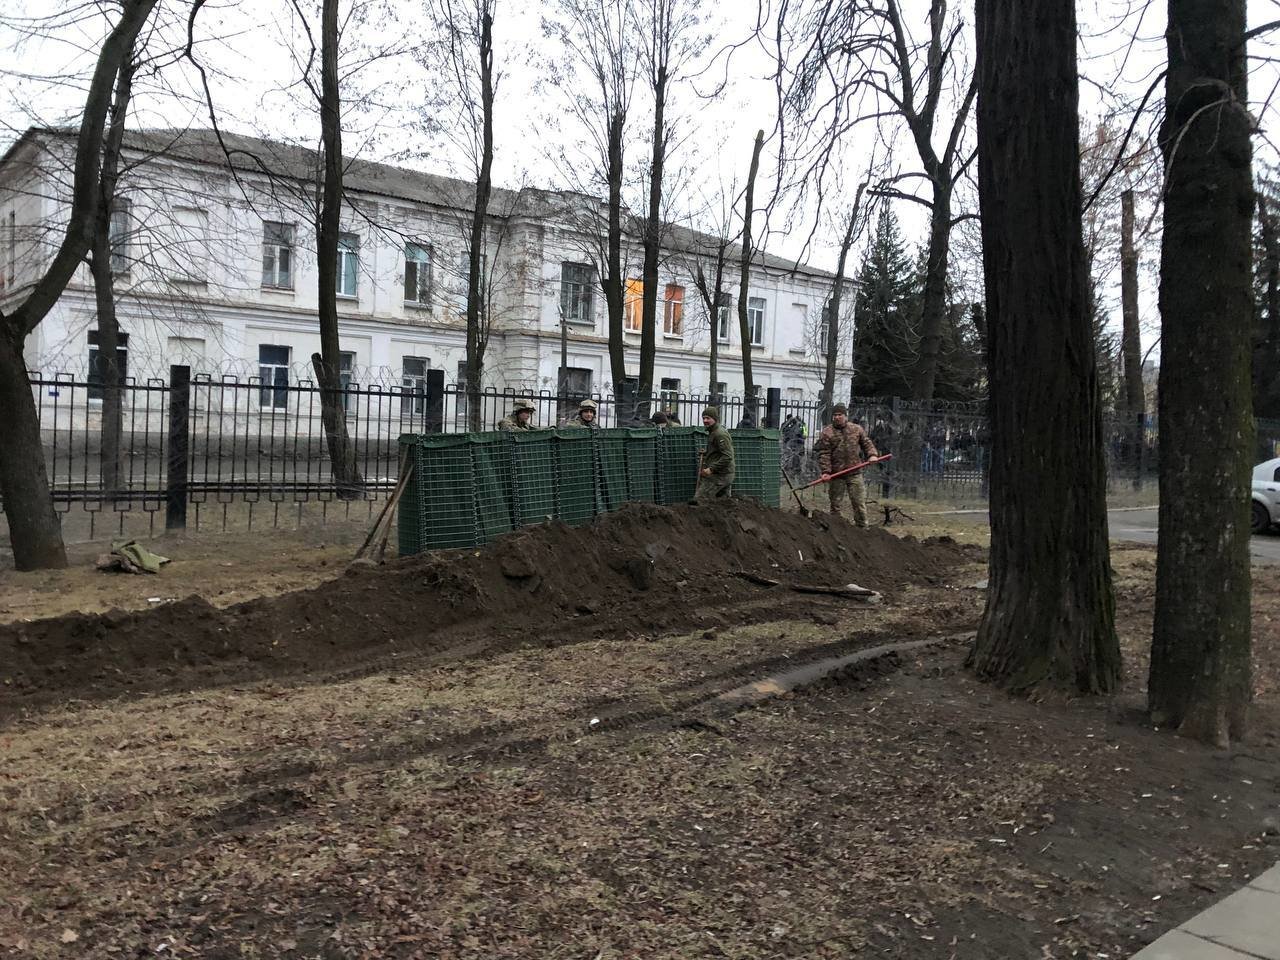 kyiv under siege